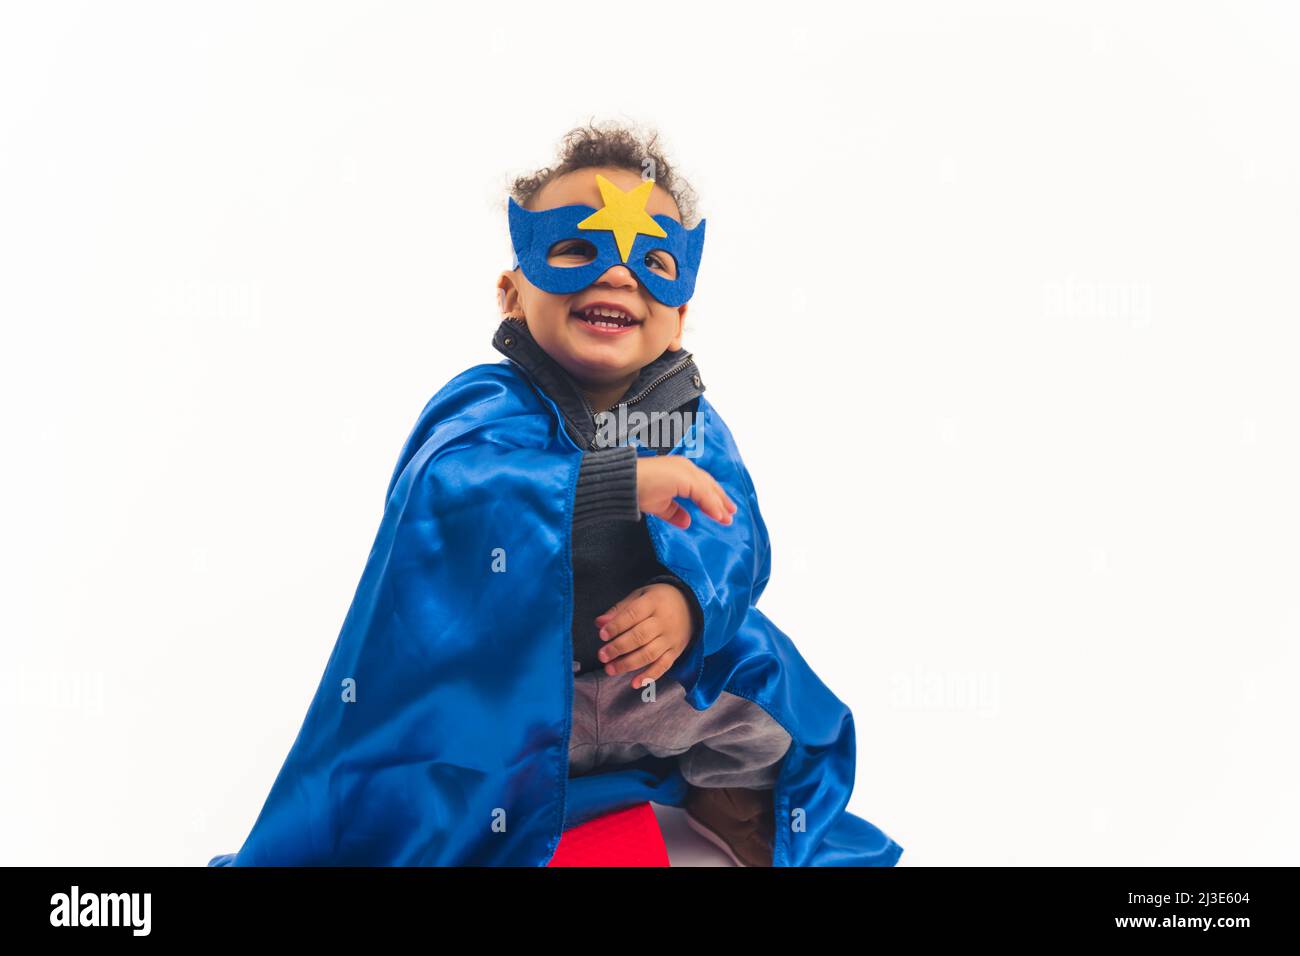 Kleiner afroamerikanischer lockiger Junge mit dem blauen Kostüm des Superhelden lachend voller Schuss Studio Schuss weißen Hintergrund Kopie Raum. Hochwertige Fotos Stockfoto